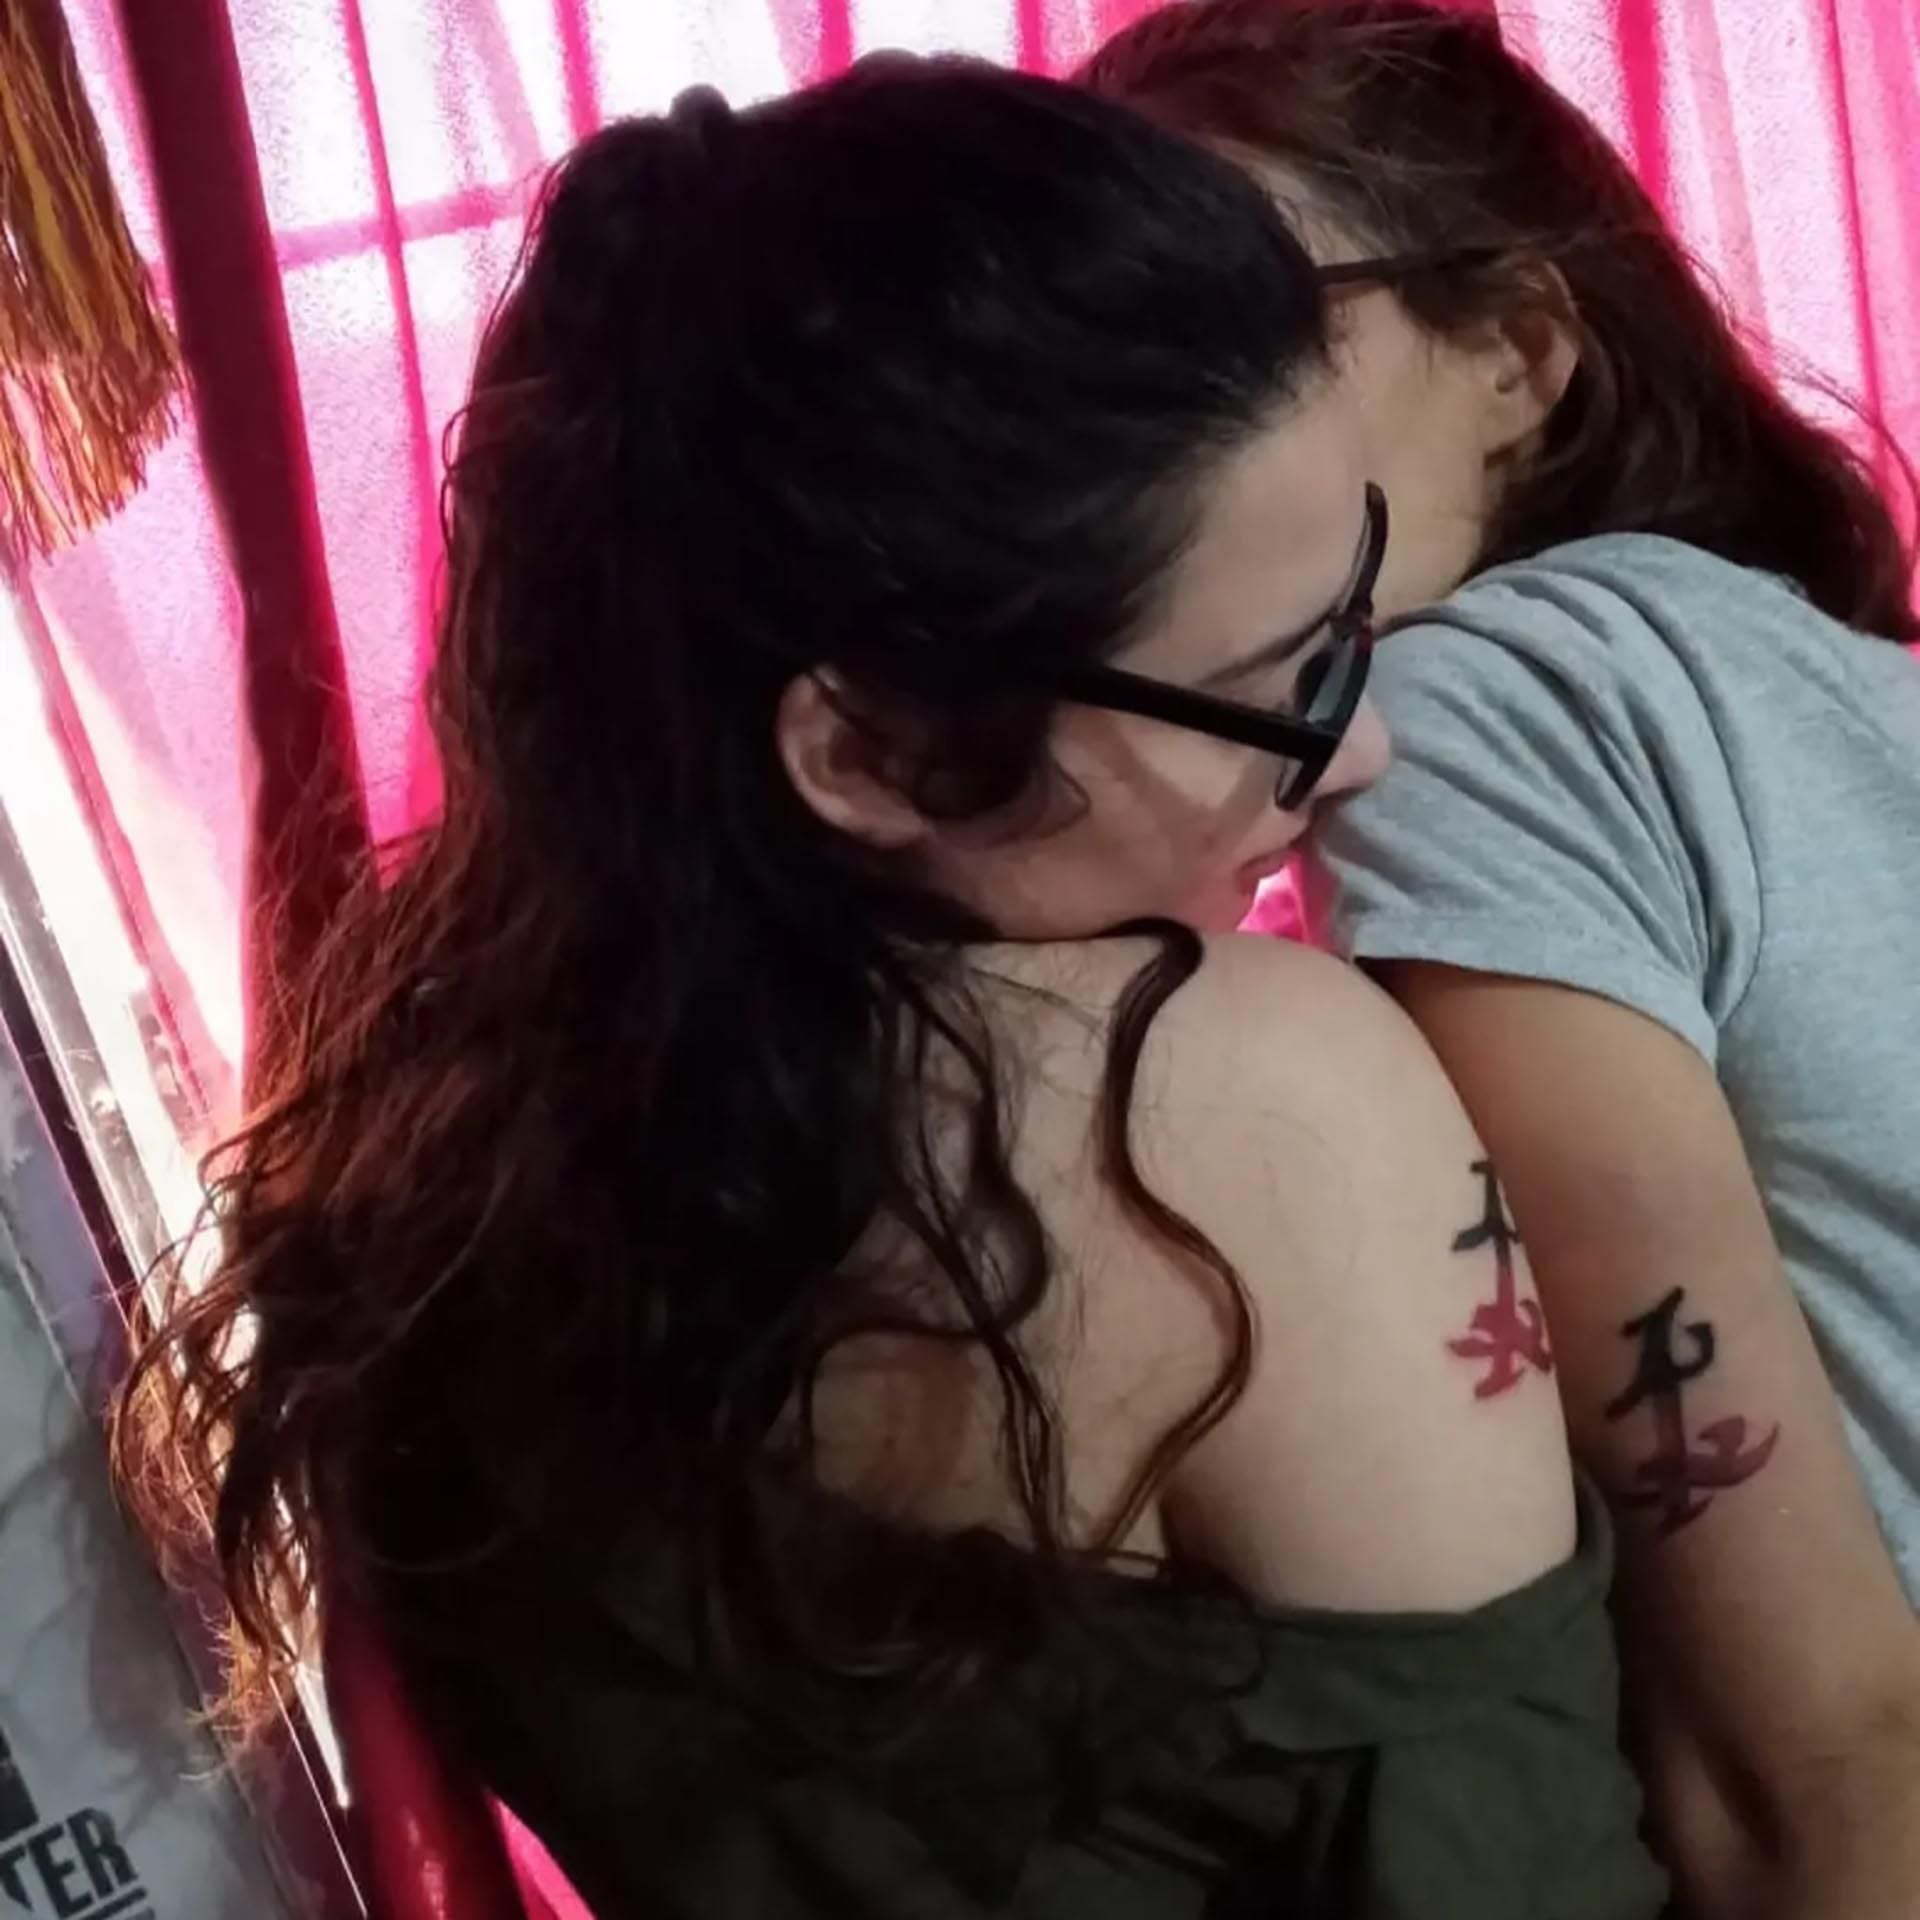 Cecilia y ngela compartan un tatuaje parabatai, que representa su unin para toda la vida